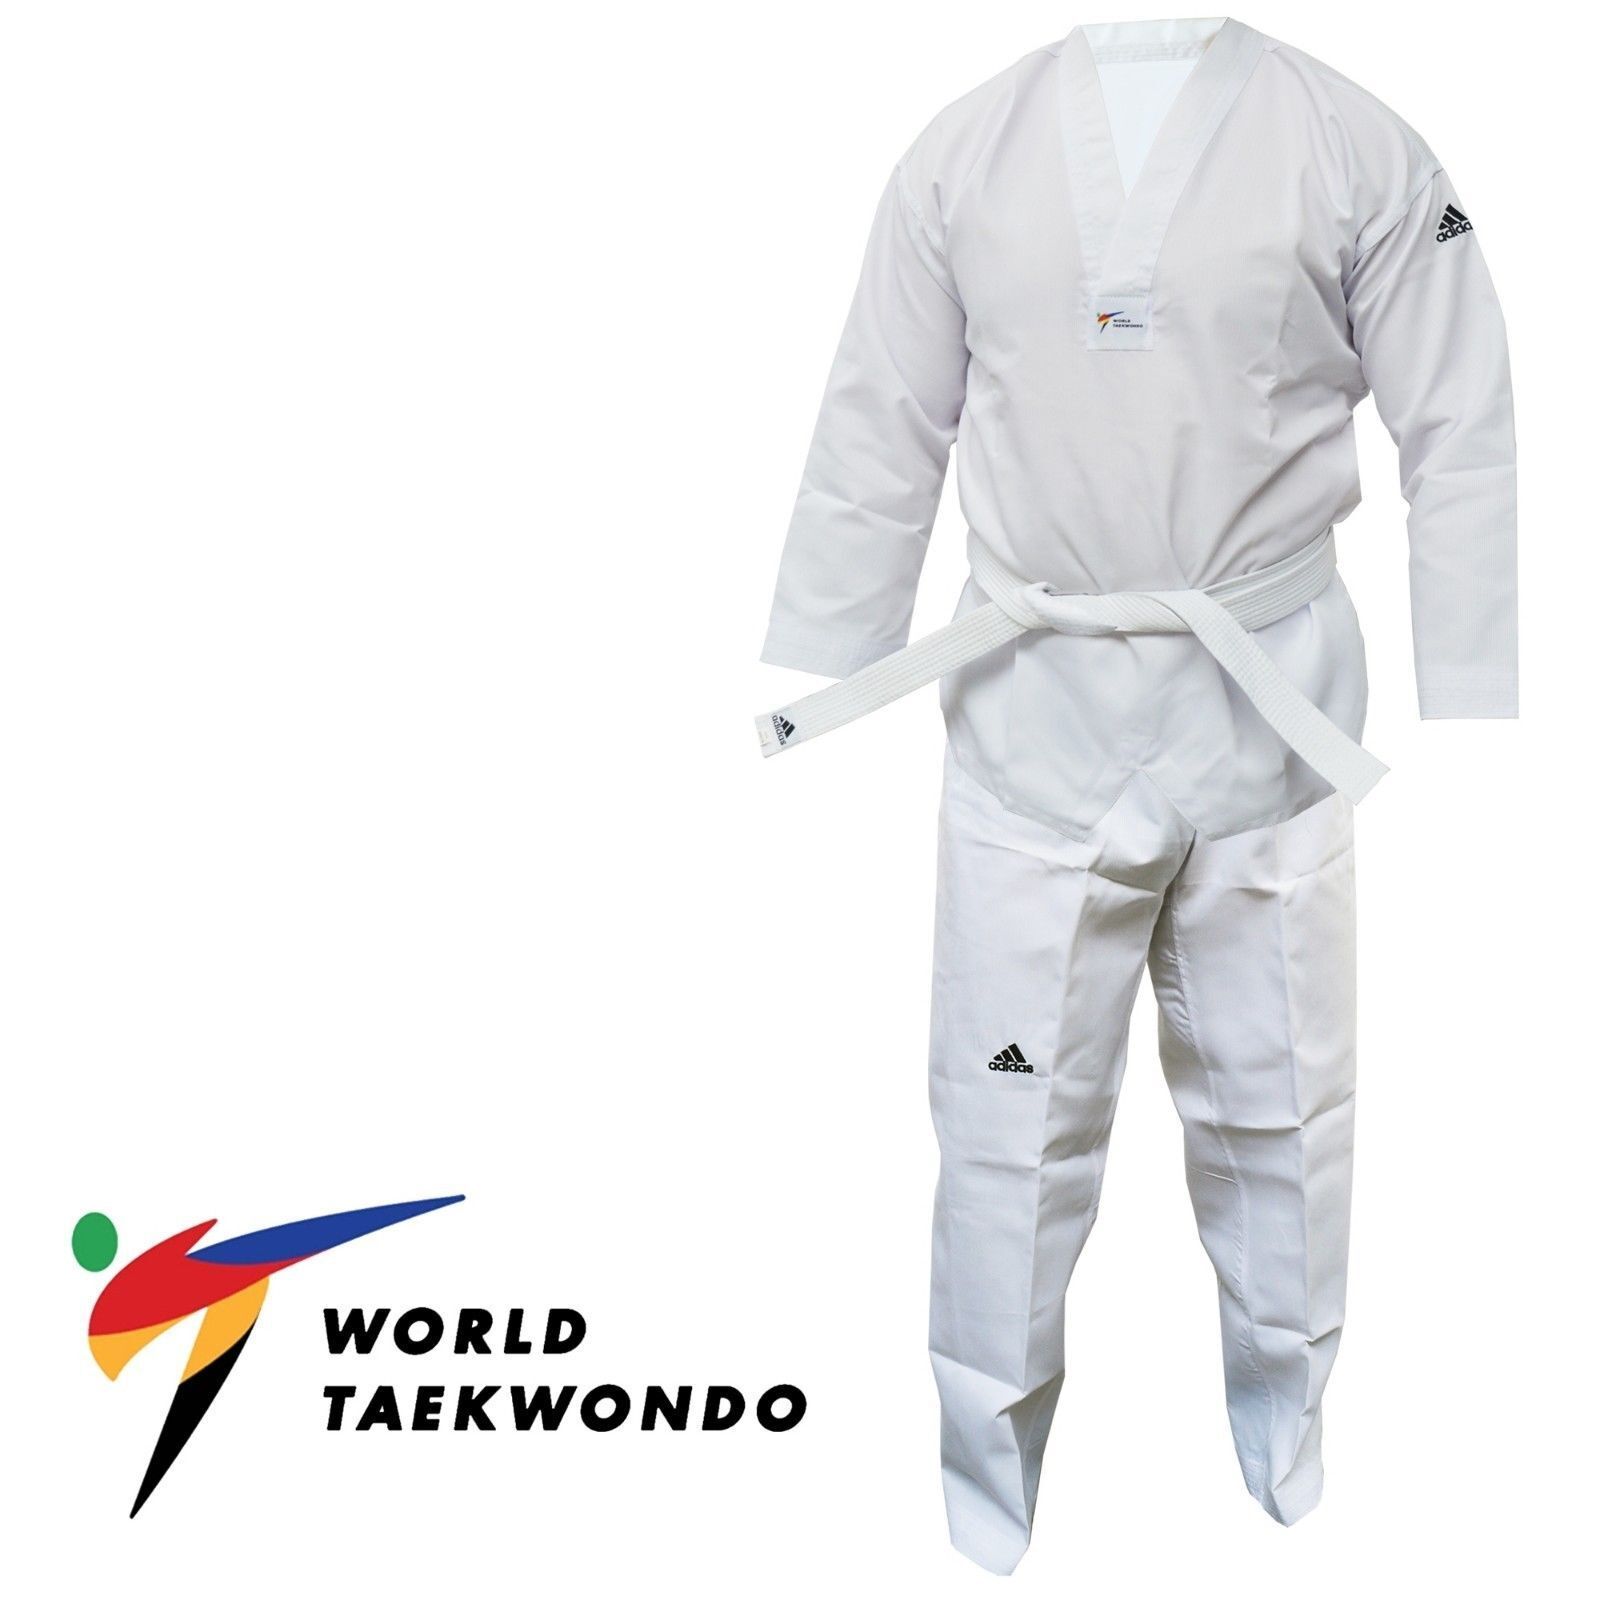 Traje de Adidas WT aprobado Taekwondo estudiante Dobok adulto niños uniforme Gi | eBay